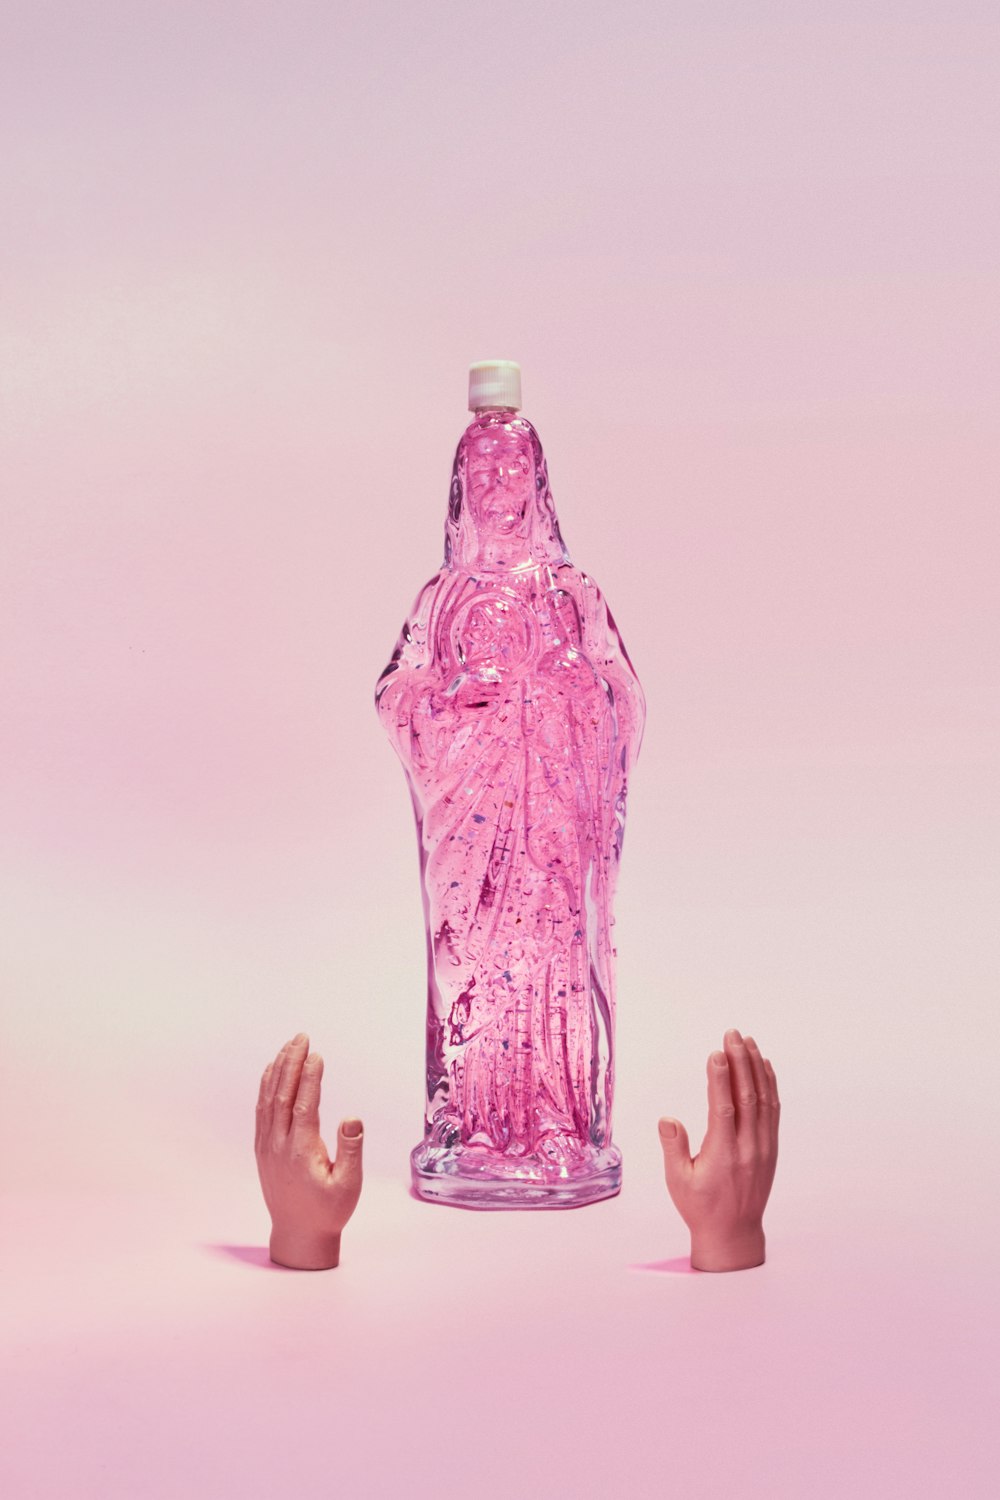 personne tenant une bouteille en plastique violette